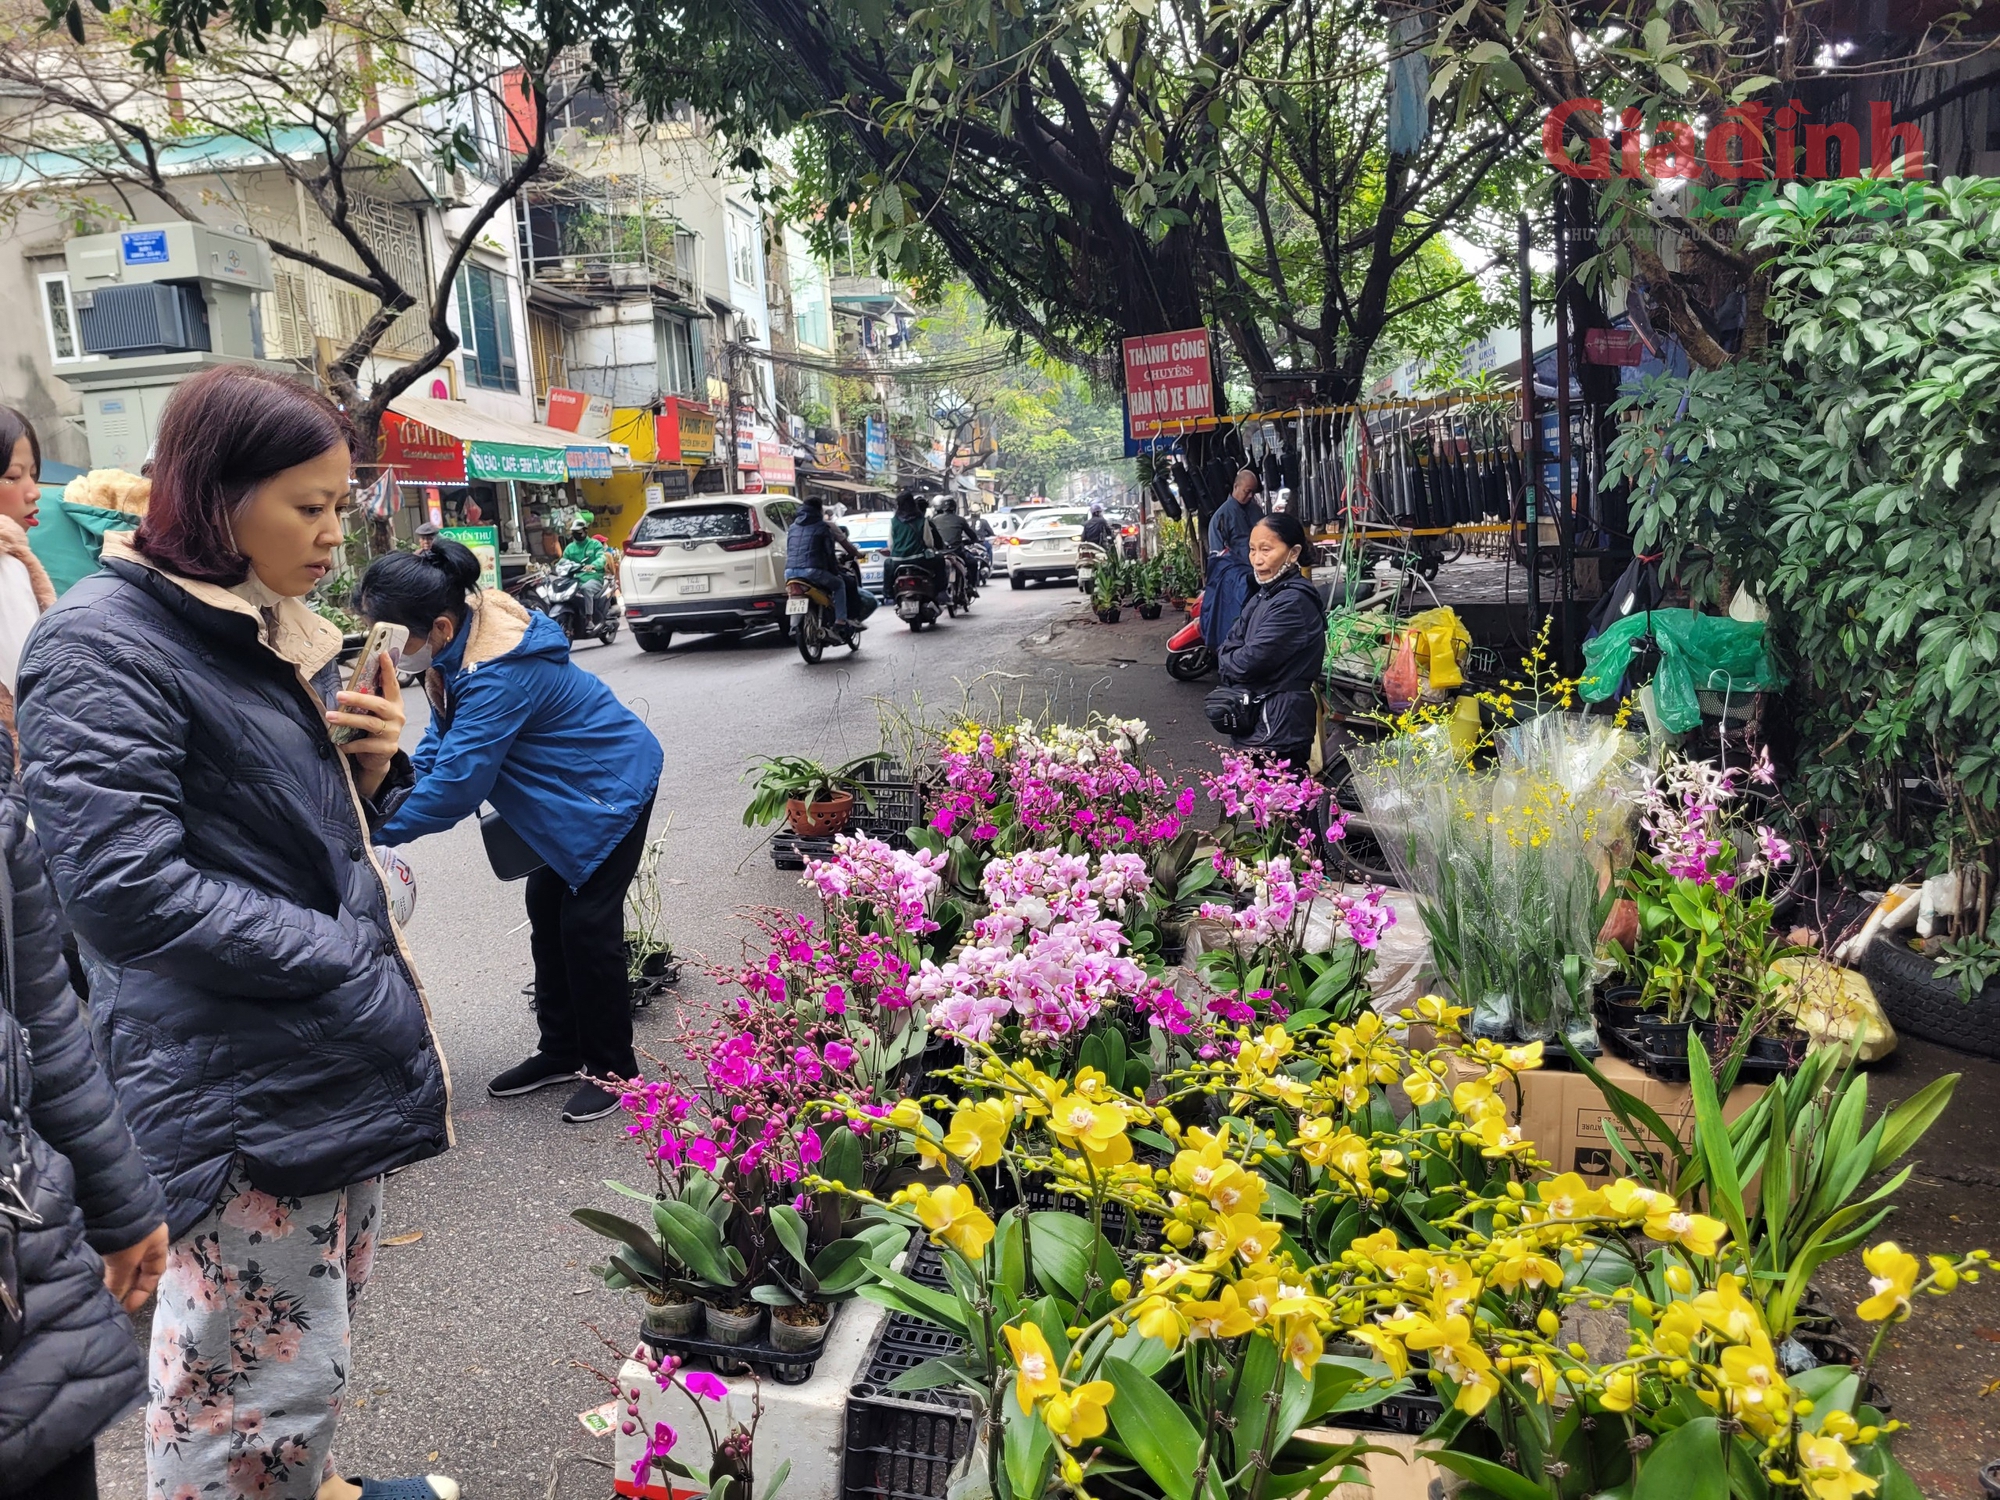 Hoa lan xuống phố ngày cận Tết, giá bán gấp đôi ngày thường, người tiêu dùng Thủ đô vẫn tranh nhau mua